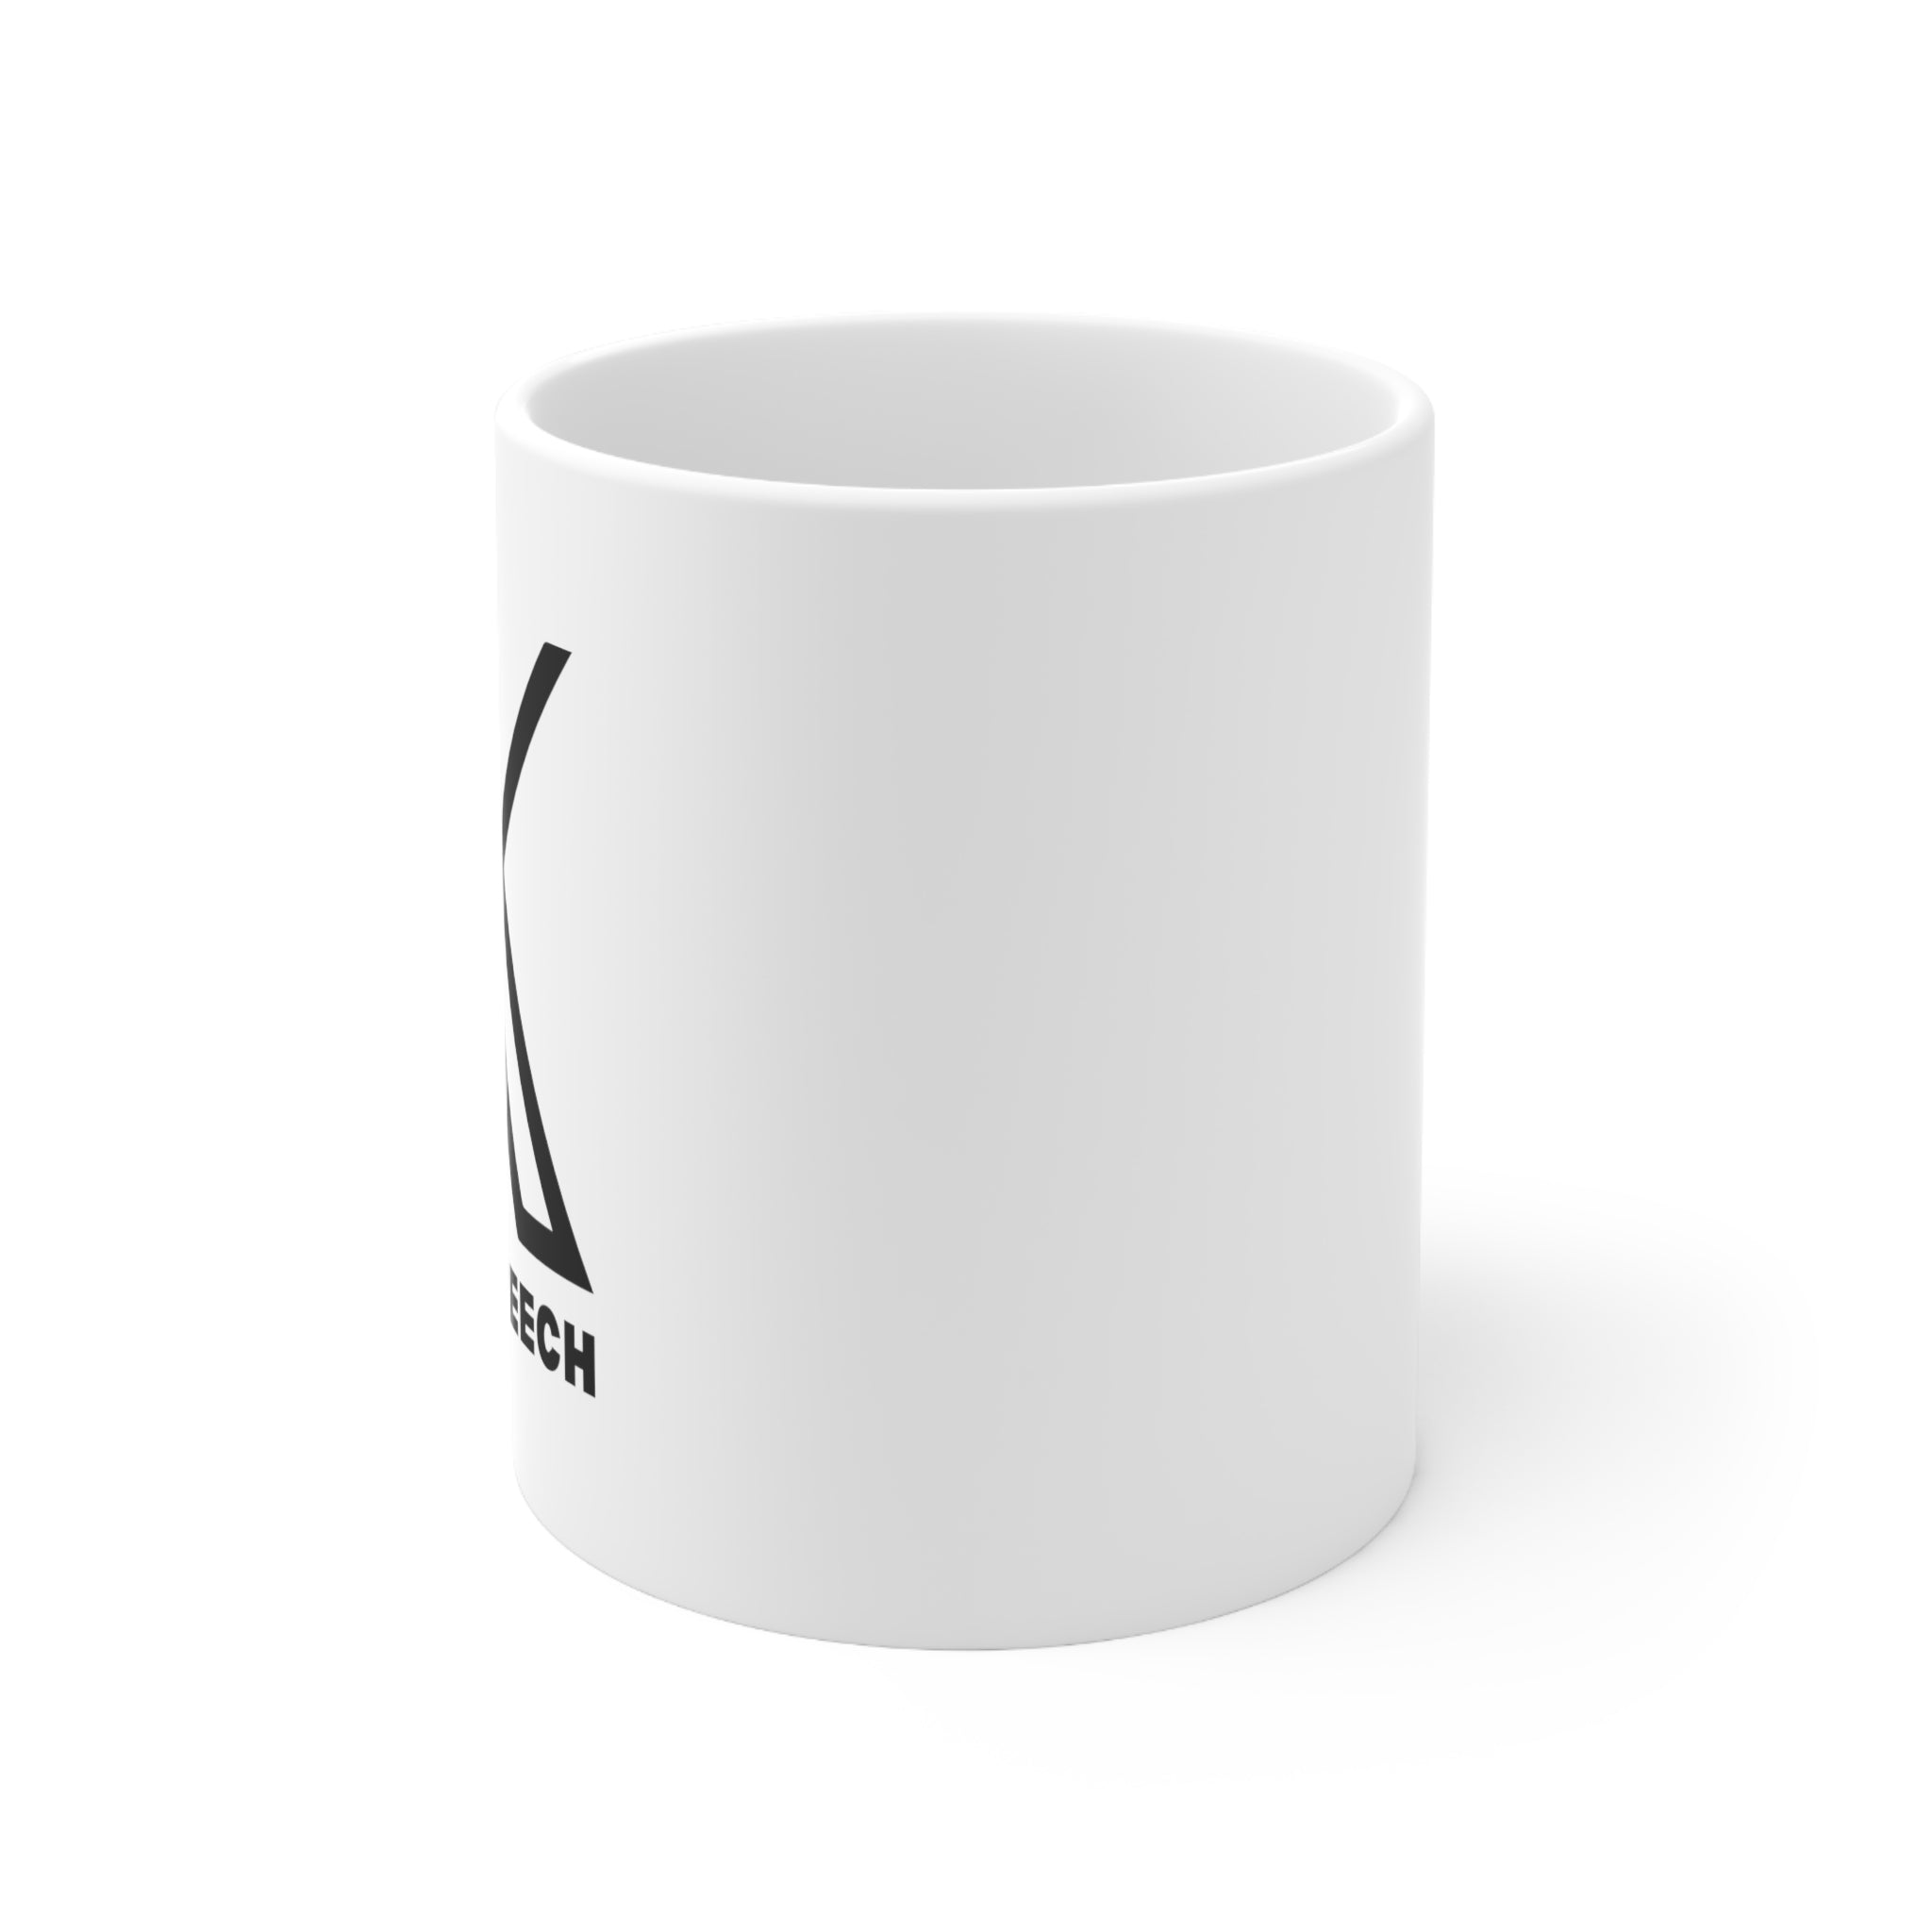 Support 𝕏 Ceramic Mug 11oz